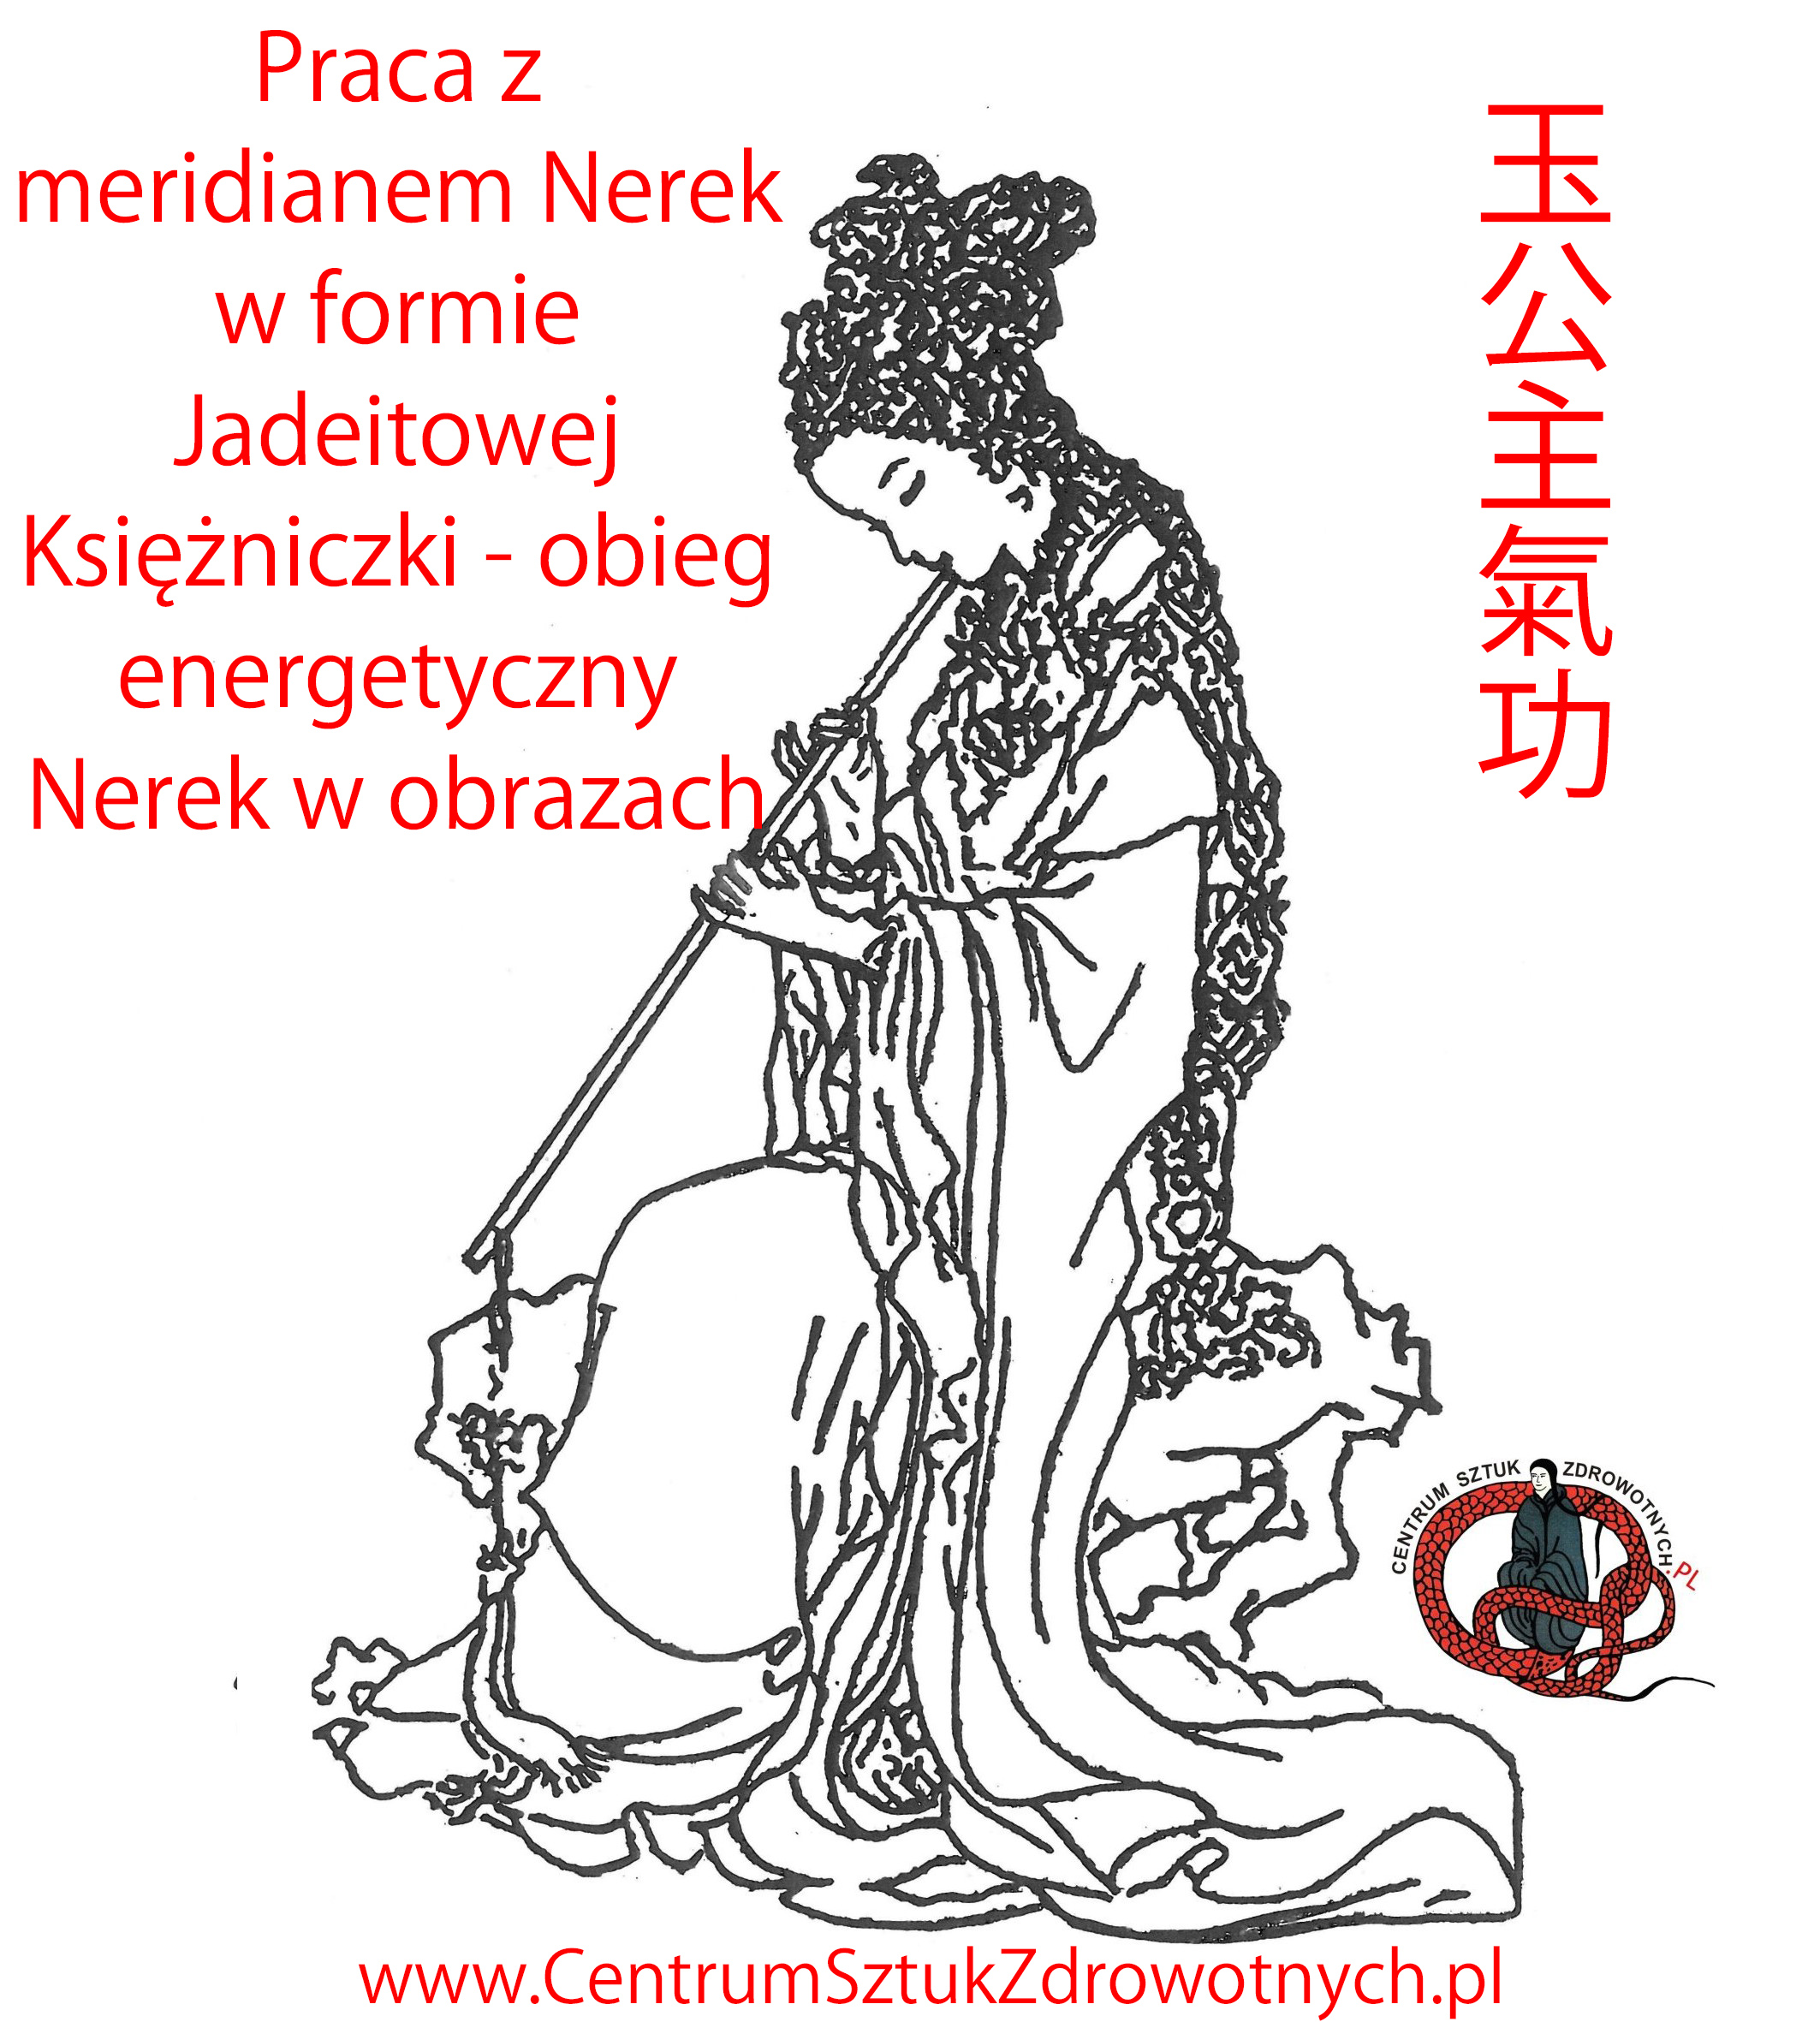 Chi Kung, Tai Chi, Qigong, Warszawa - Praca z meridianem Nerek w formie Jadeitowej Księżniczki - obieg energetyczny Nerek w obrazach JK_MEM_1.jpg